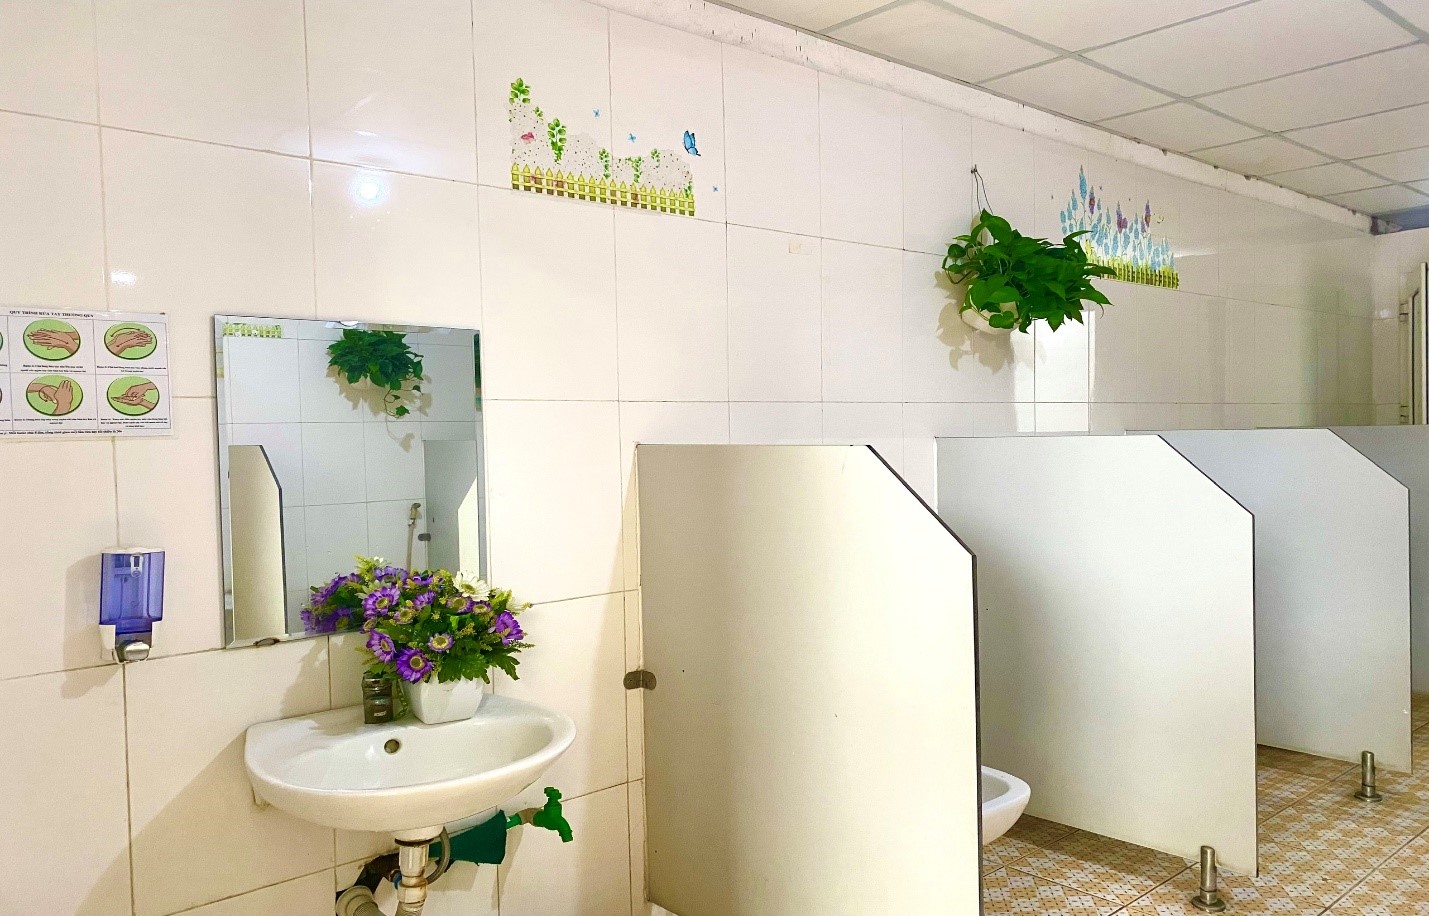 Phong trào Trang trí Nhà vệ sinh xanh sạch  Đẹp Thân thiện 2020 2021